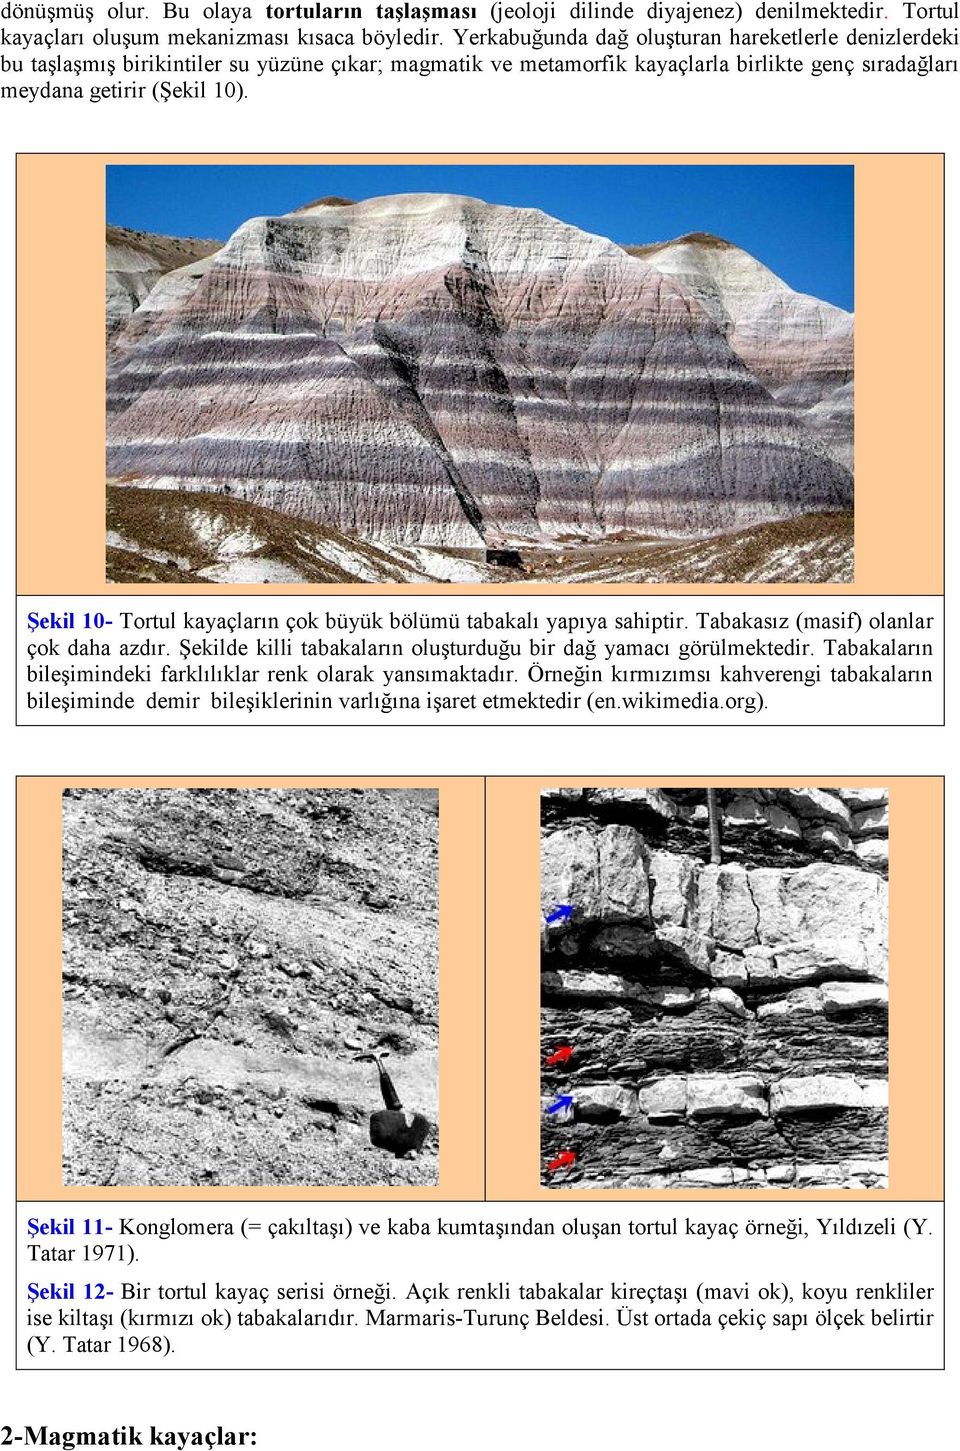 ġekil 10- Tortul kayaçların çok büyük bölümü tabakalı yapıya sahiptir. Tabakasız (masif) olanlar çok daha azdır. Şekilde killi tabakaların oluşturduğu bir dağ yamacı görülmektedir.